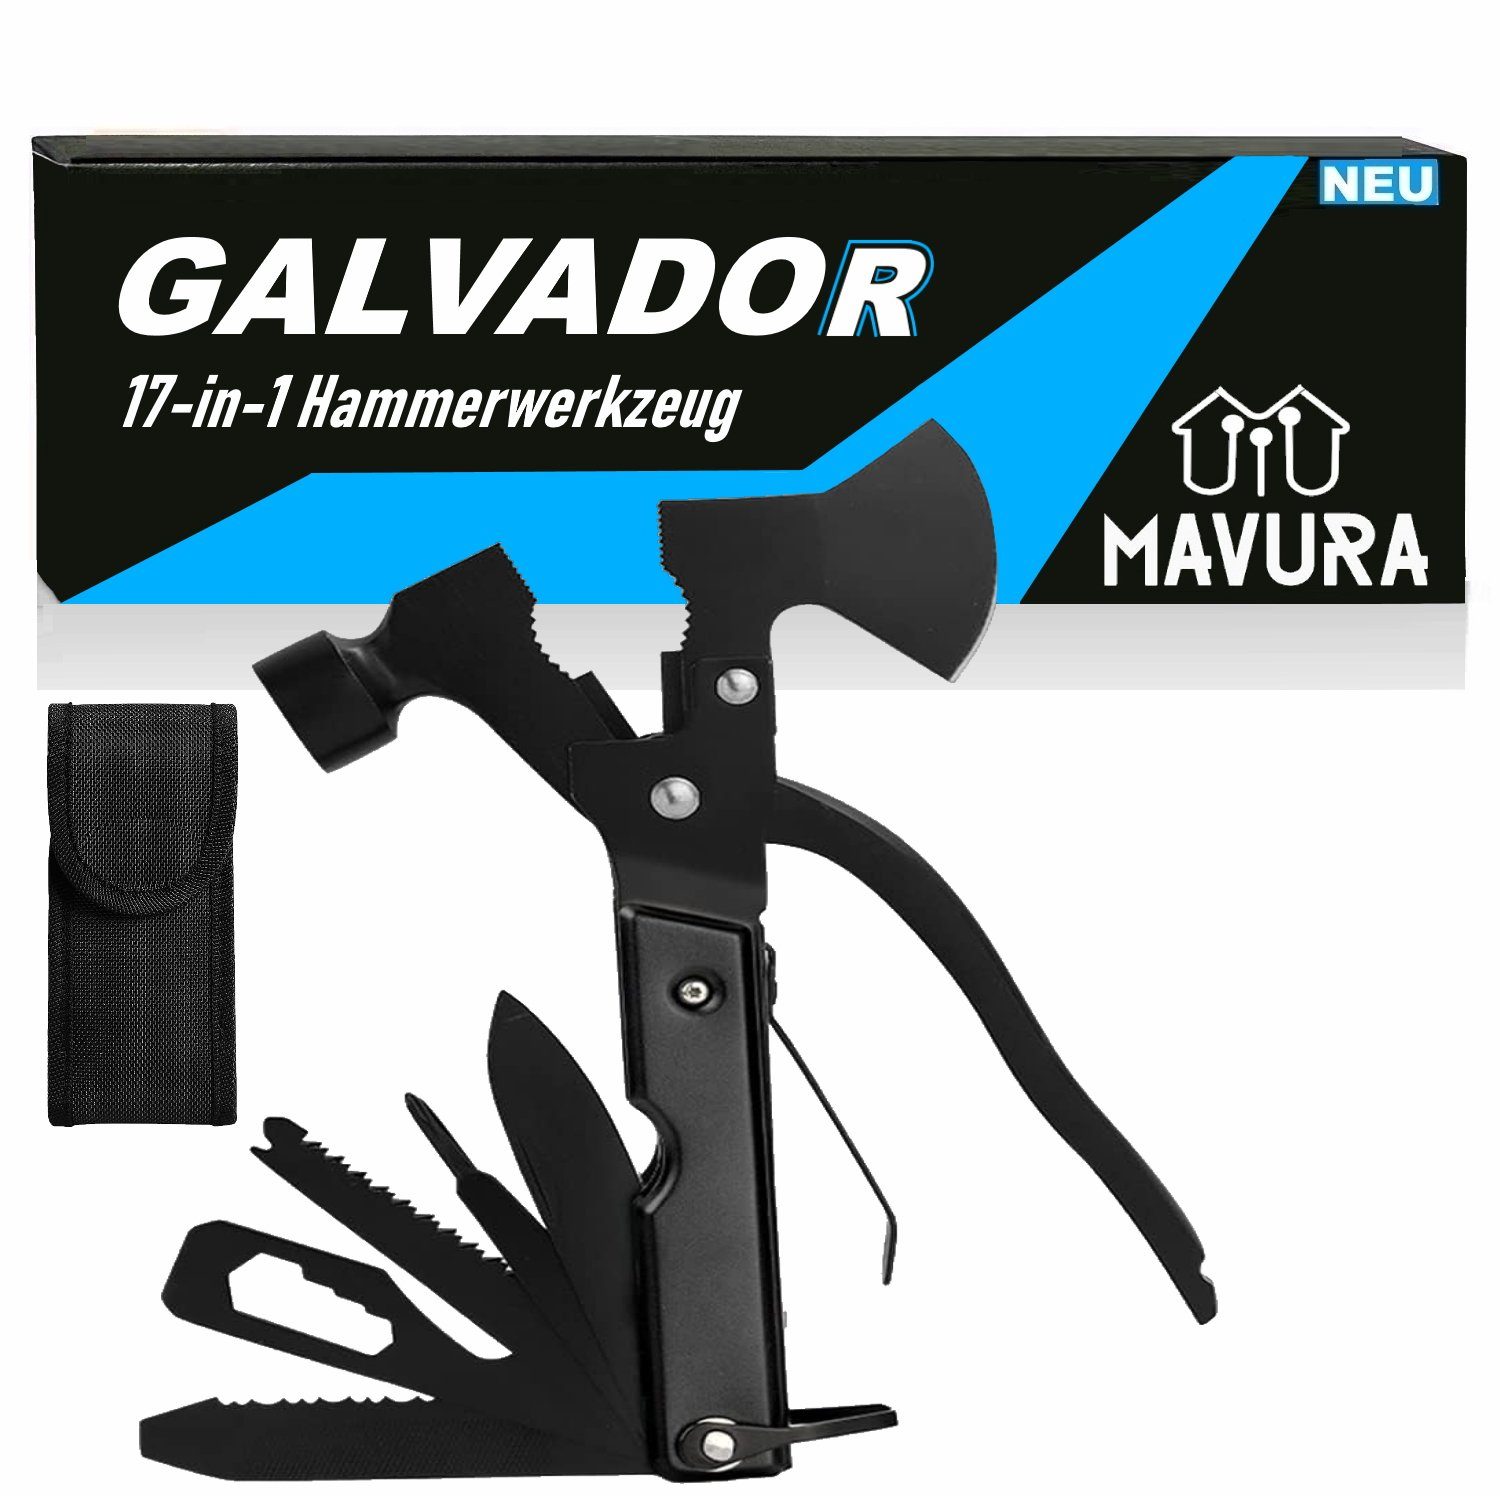 MAVURA Multitool GALVADOR 17in1 Multifunktionswerkzeug Axt Hammer Zange Multitool, Taschenmesser Messer Schraubendreher Drahtschneider Bit